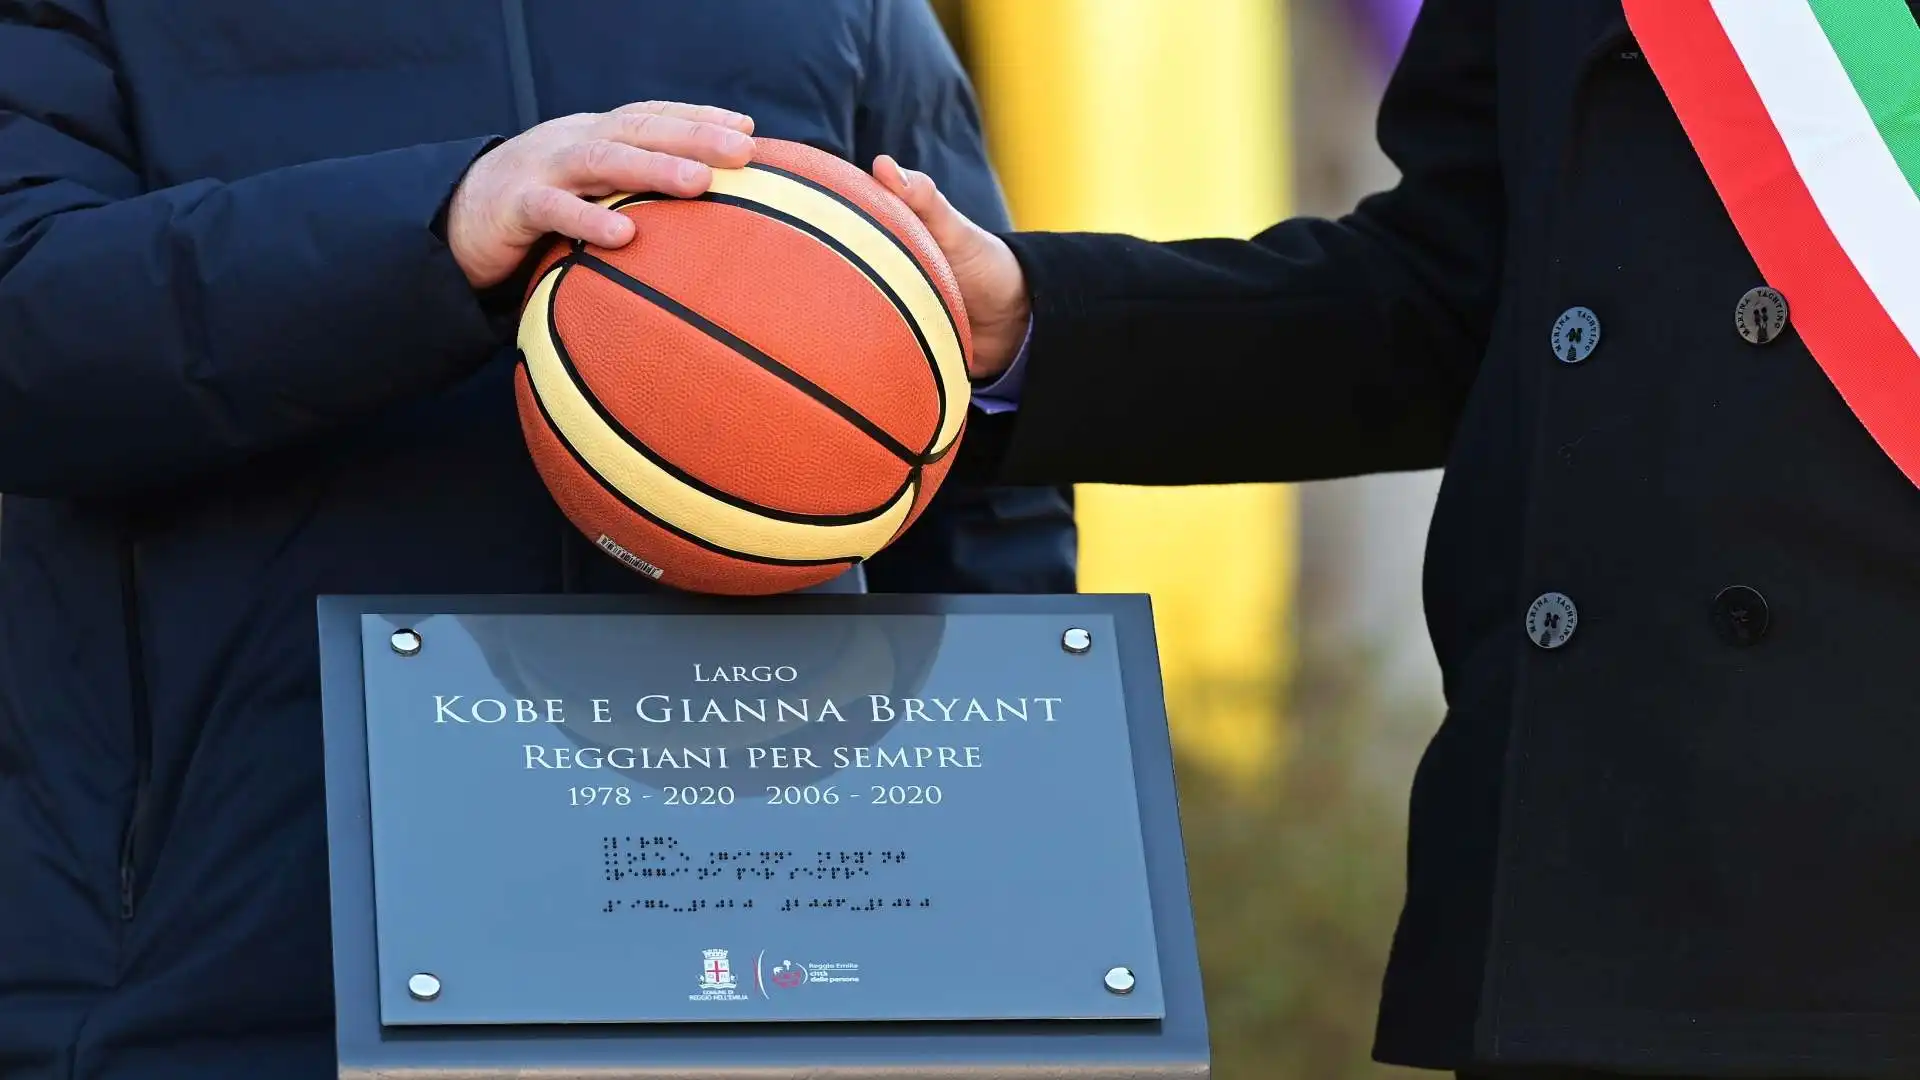 Kobe e Gianna sono anche diventati cittadini onorari di Reggio Emilia, una delle città dove ha giocato il padre del Mamba